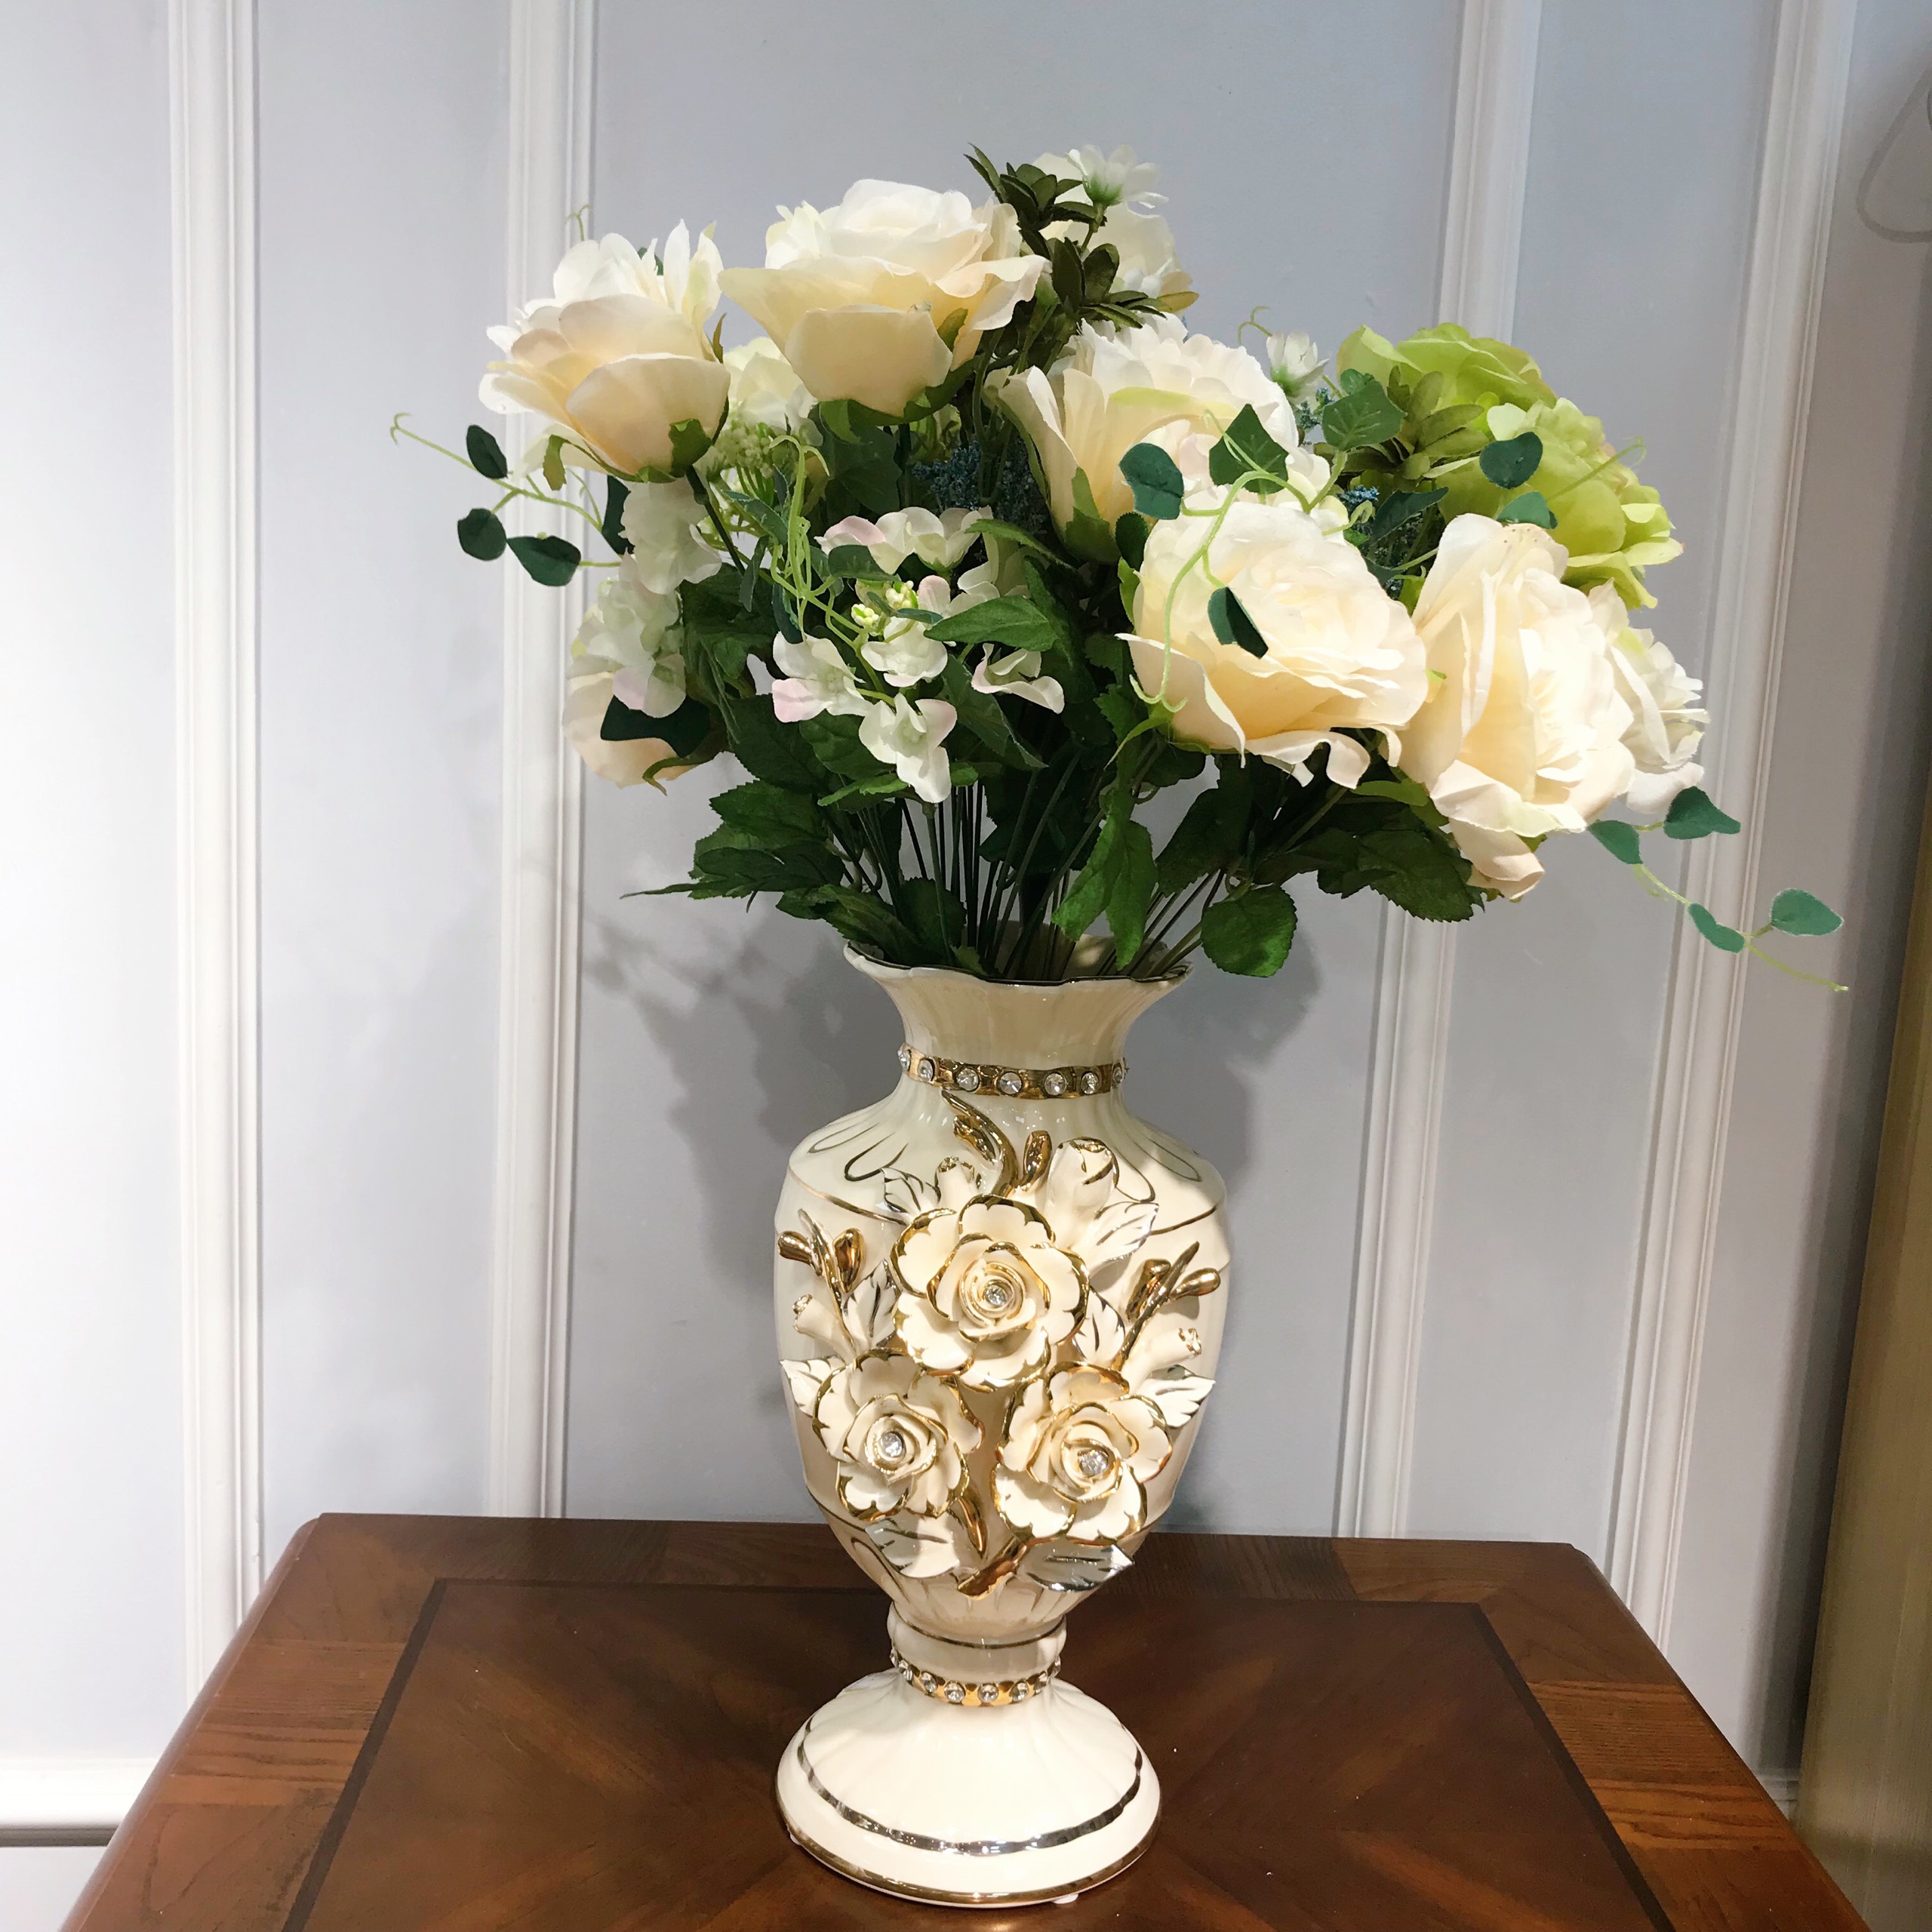 Lọ hoa trang trí họa tiết hoa mai sứ đắp nổi tinh tế mang phong cách tân cổ điển sang trọng CB21binhhoamoinho.